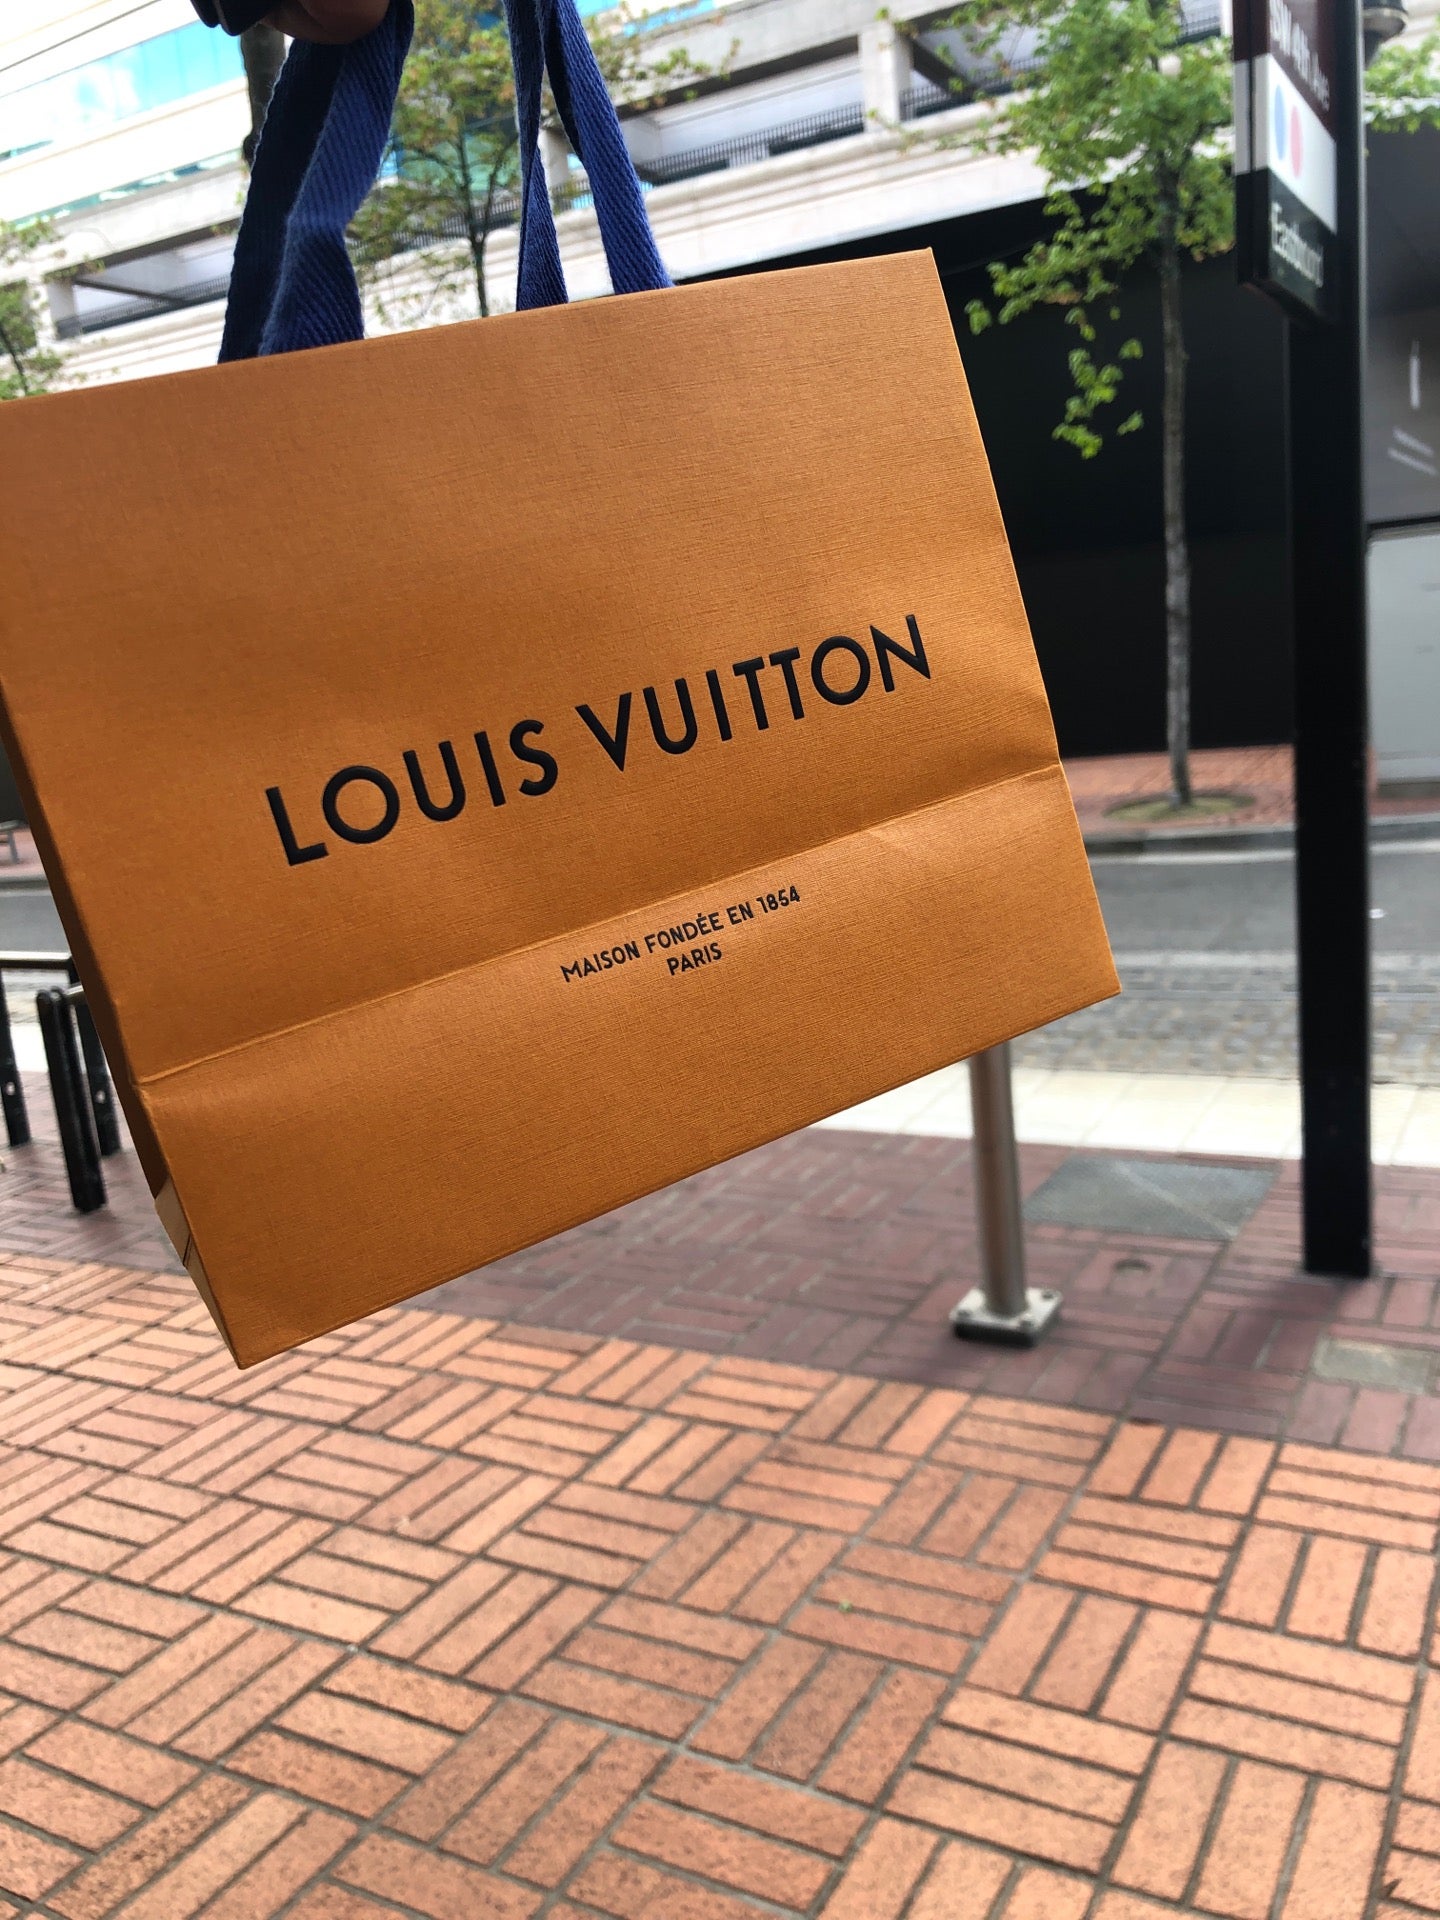 Louis Vuitton Portland Hours